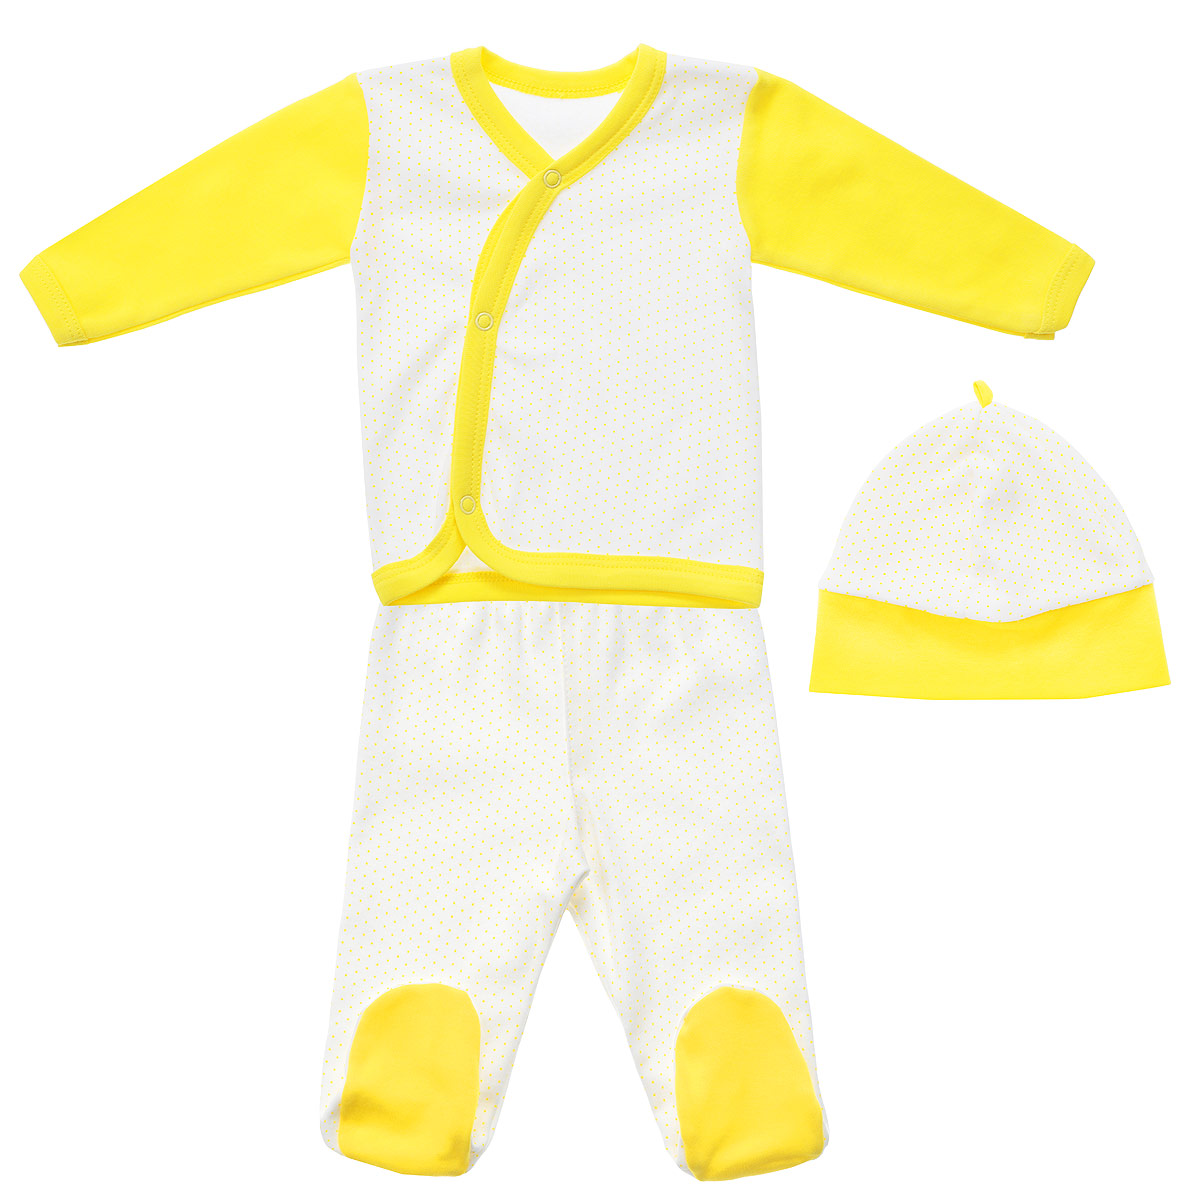 Комплект детский Фреш Стайл: кофточка, ползунки, шапочка, цвет: белый, желтый. 33С-5210. Размер 18. Рост 50, от 0 месяцев